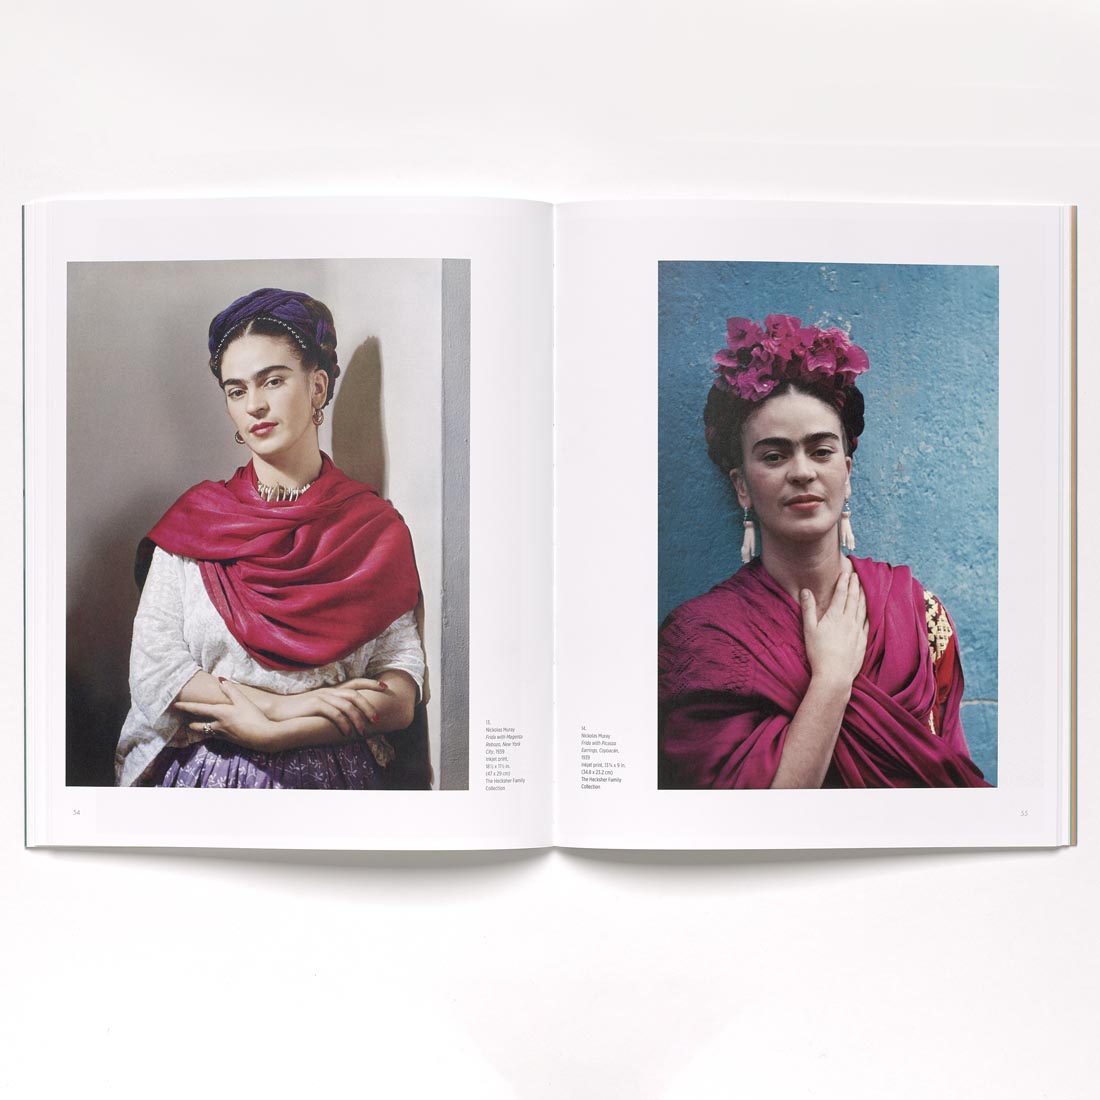 Frida Kahlo and San Francisco